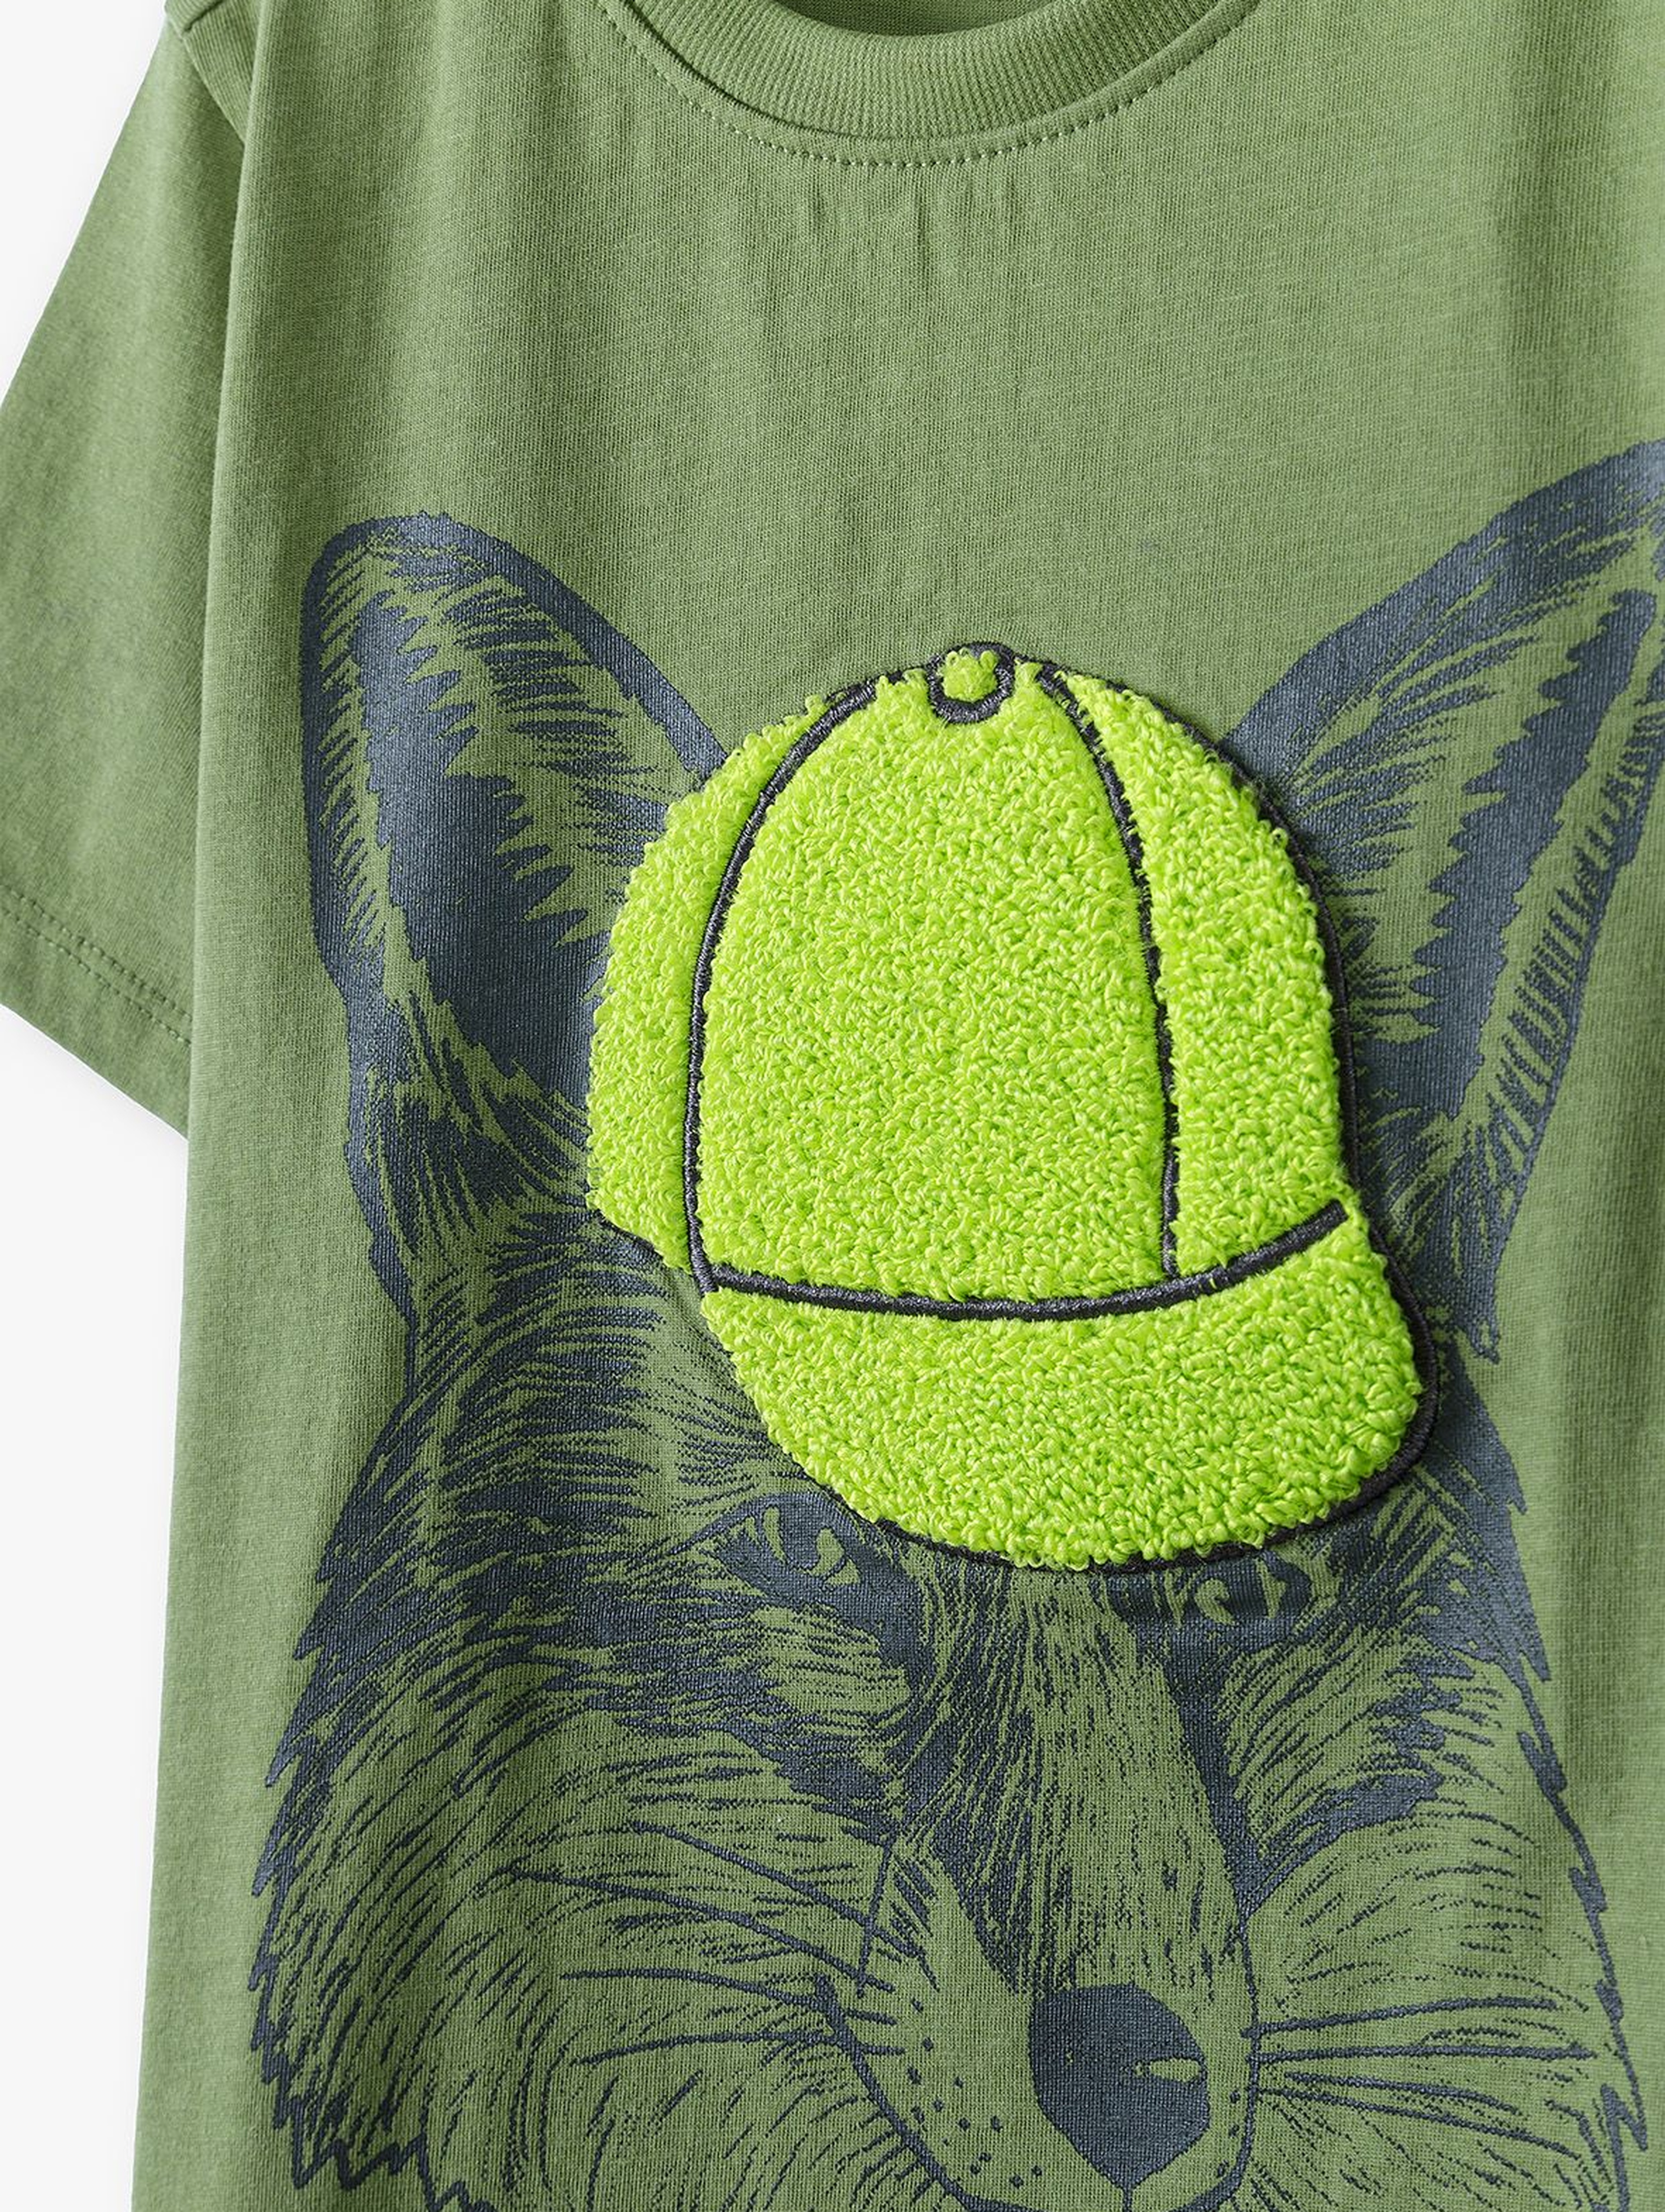 T-shirt chłopięcy bawełniany zielony z nadrukiem lisa